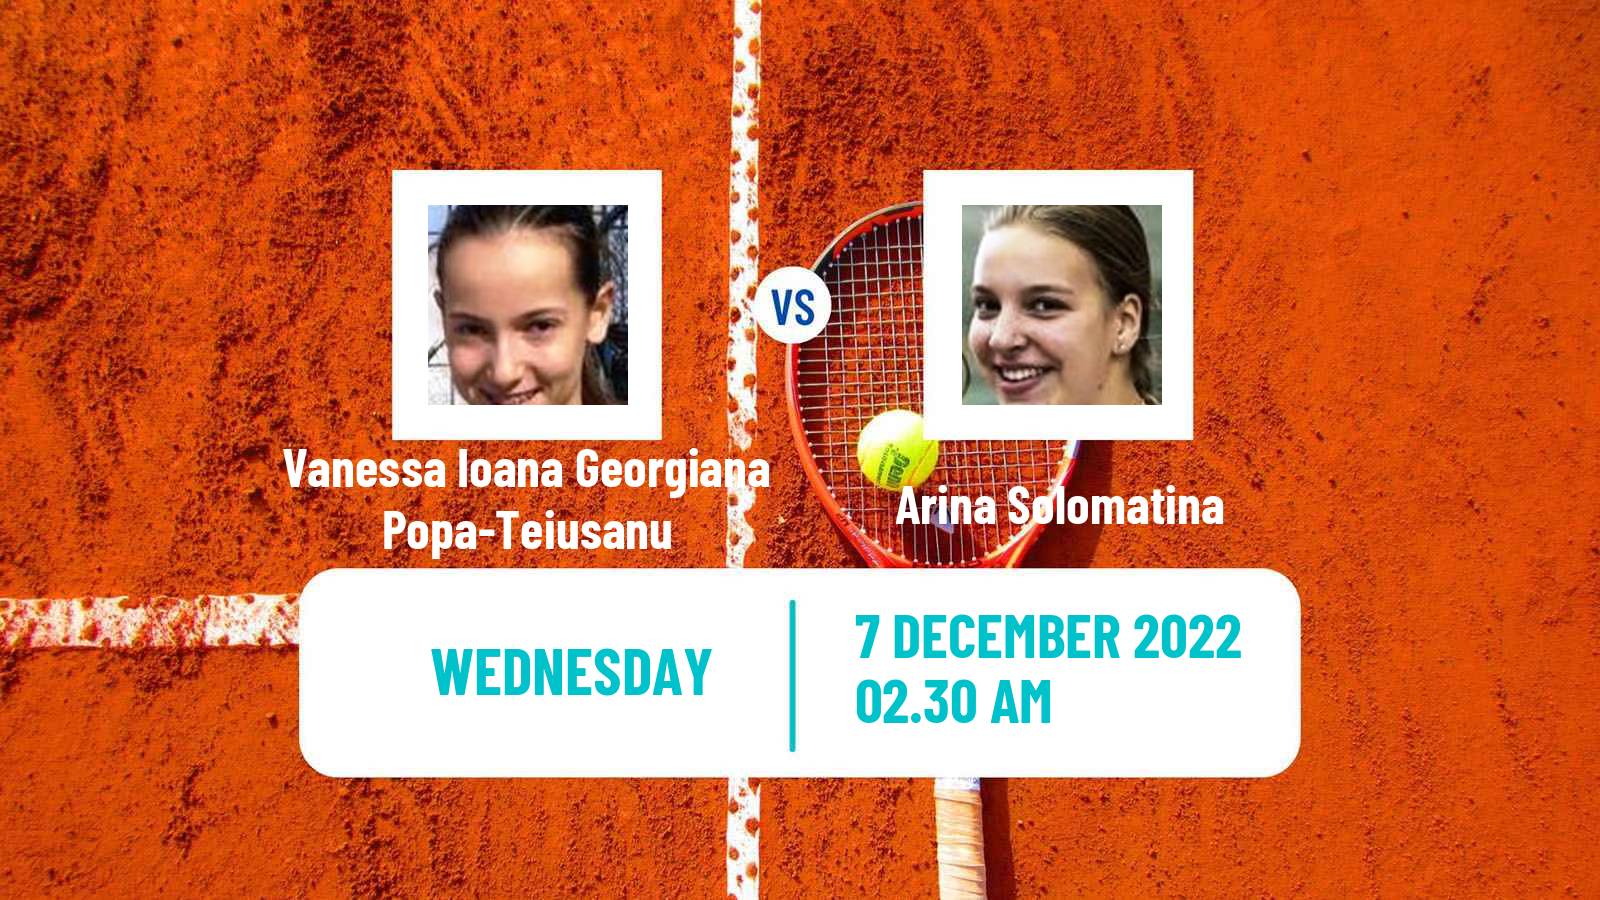 Tennis ITF Tournaments Vanessa Ioana Georgiana Popa-Teiusanu - Arina Solomatina